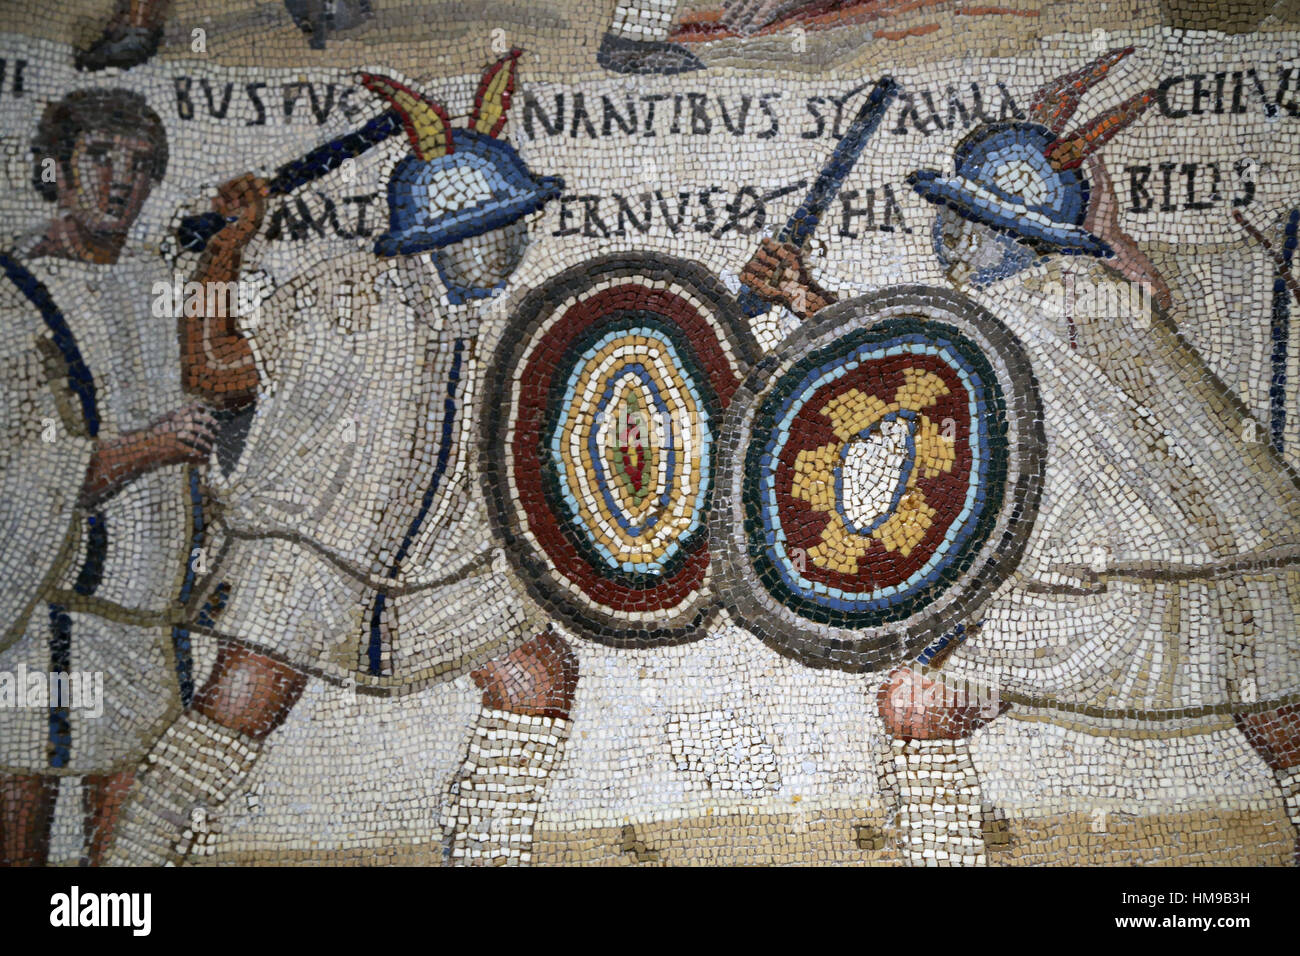 Gladiator Kampf. Mosaik. 3. Jahrhundert. Rom. Zwei Eques, flankiert von zwei Lanistae. Nationales Archäologisches Museum, Madrid. Spanien. Stockfoto